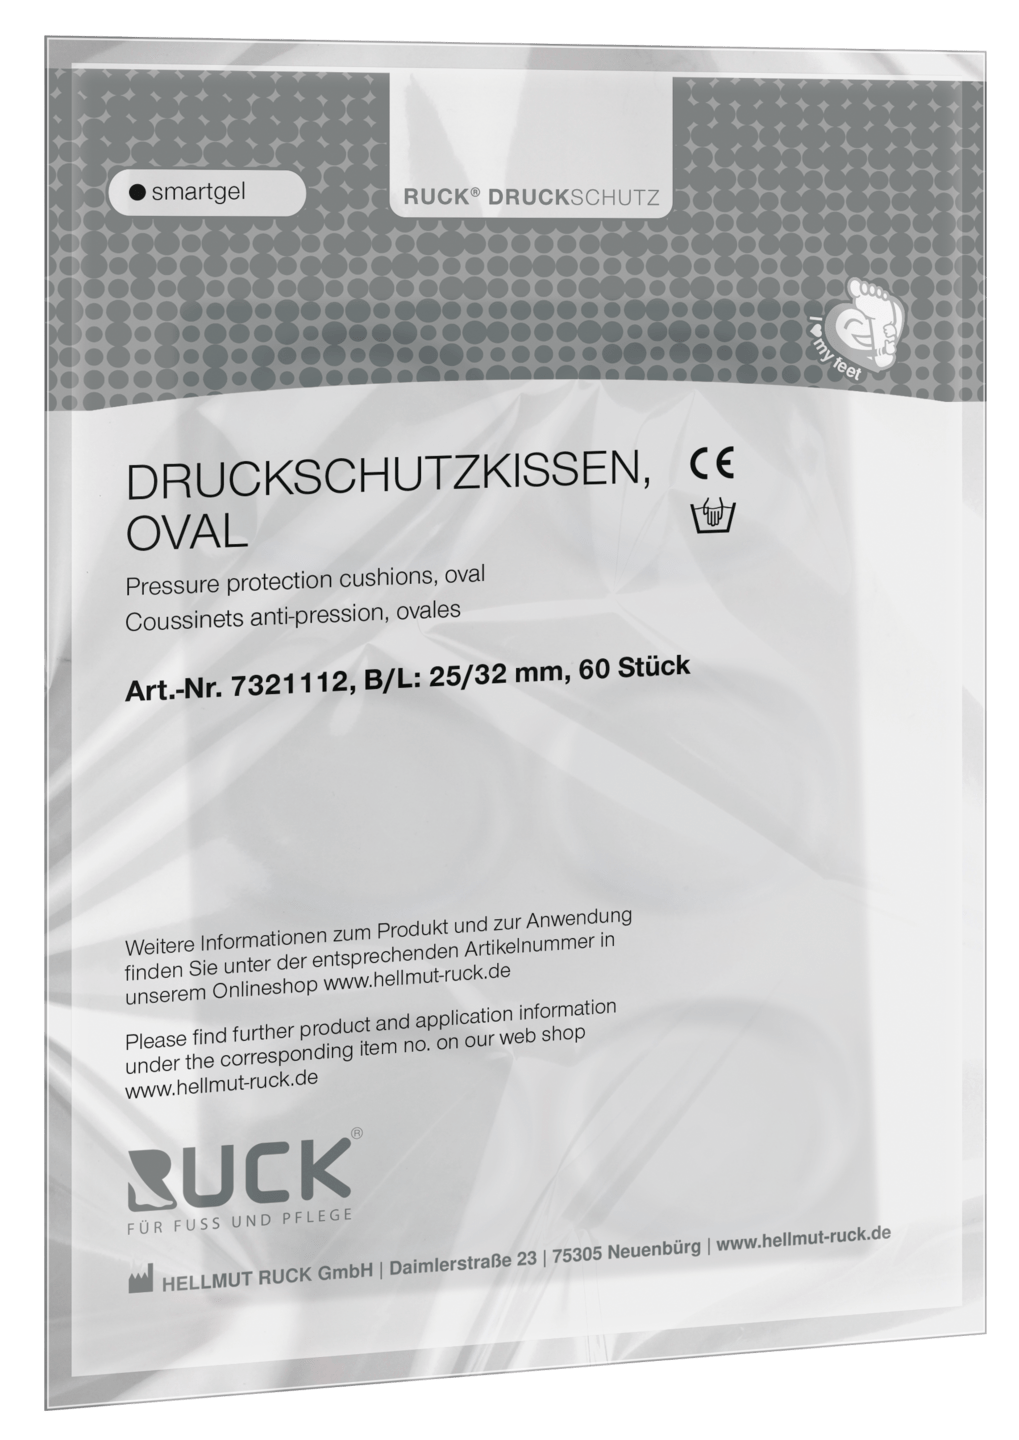 RUCK DRUCKSCHUTZ - Druckschutzkissen, oval